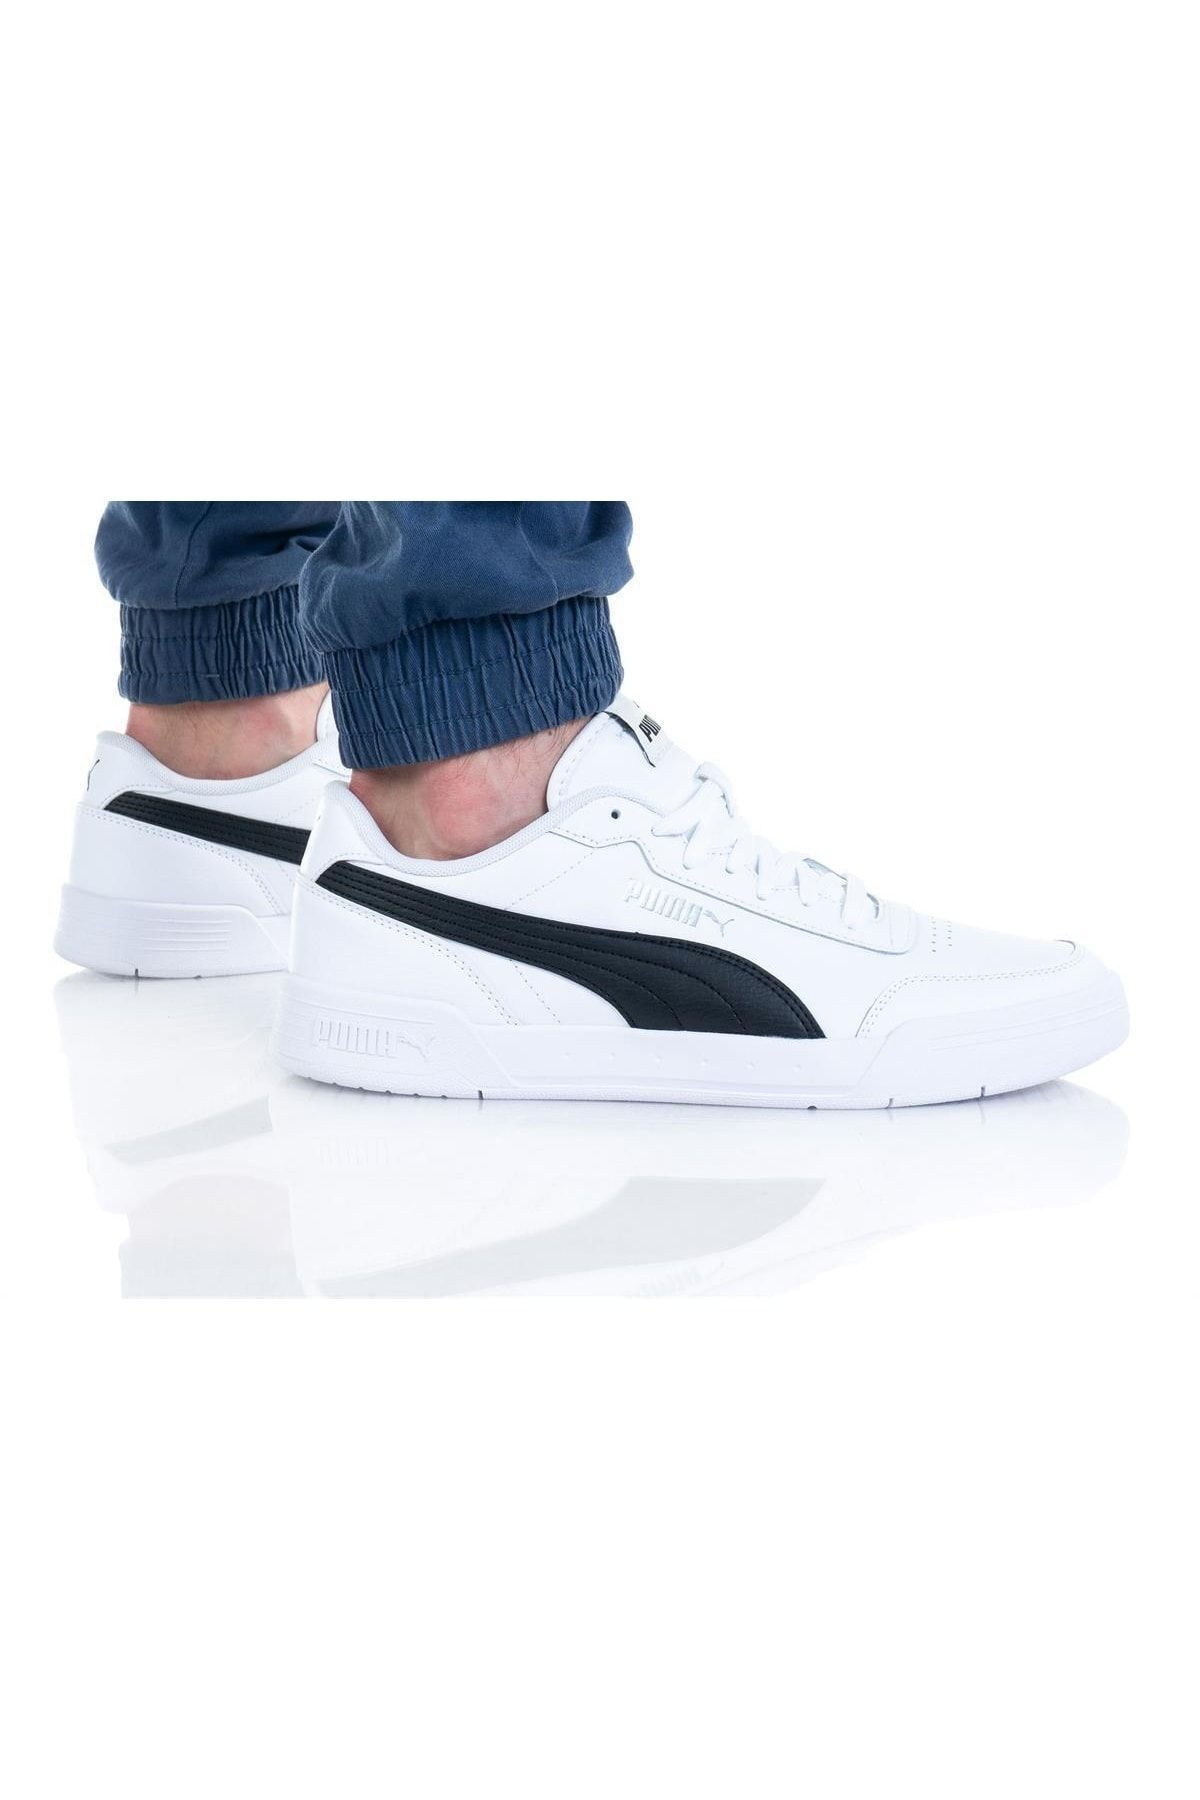 Puma Caracal Beyaz Siyah Unisex Sneaker Spor Ayakkabı 369863-03 V2